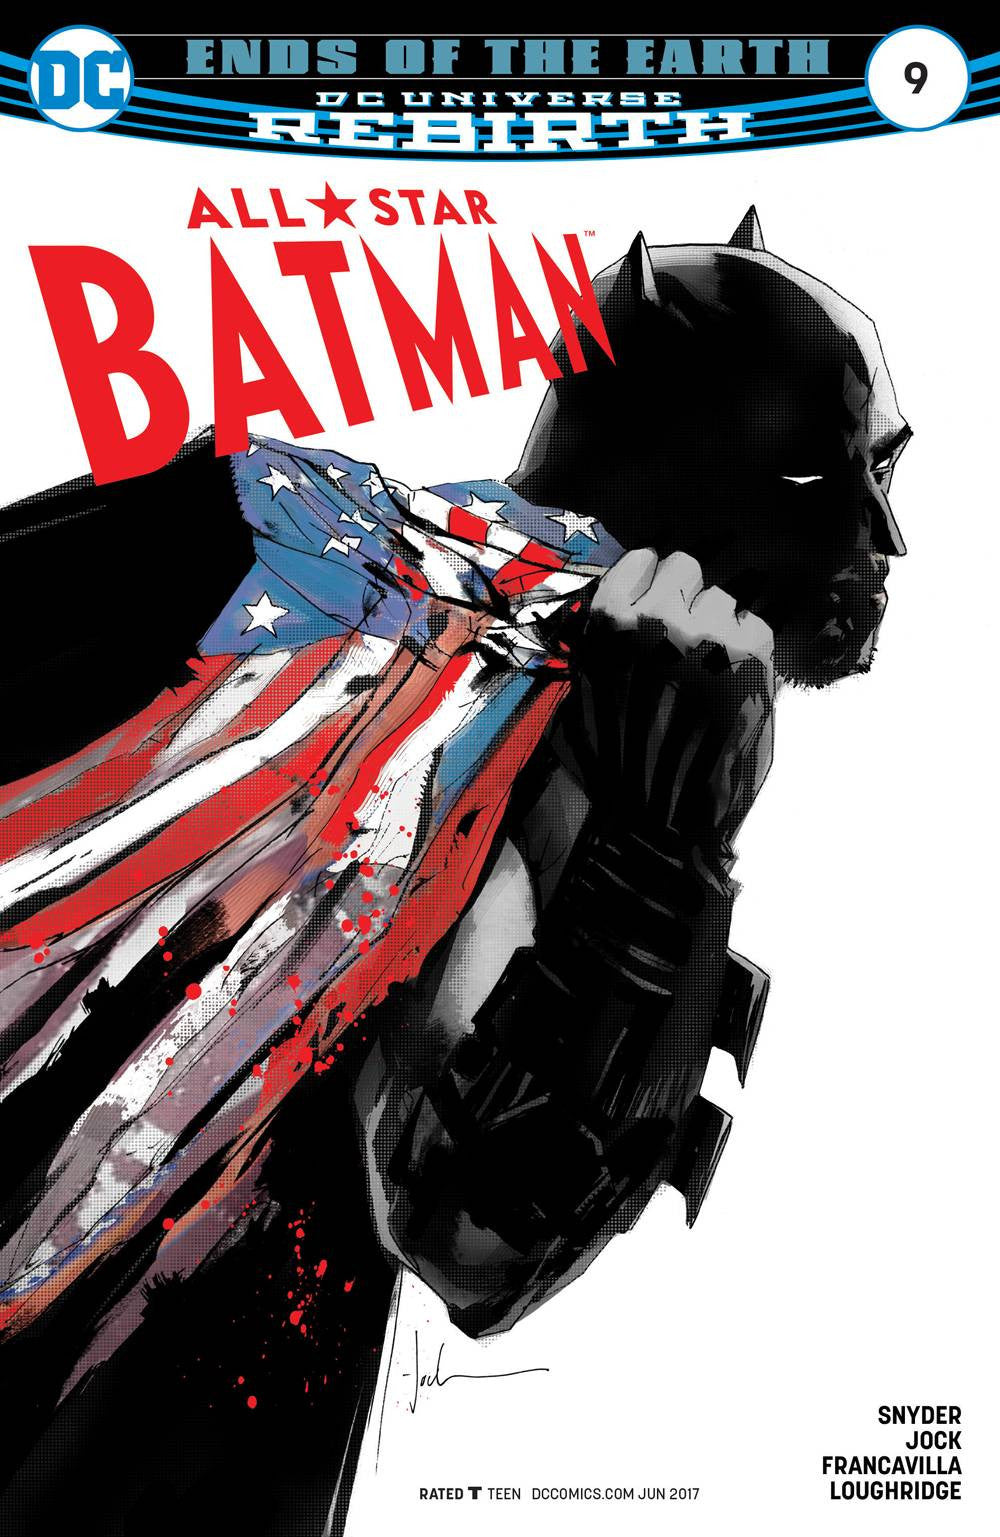 ALL STAR BATMAN #9 COVER